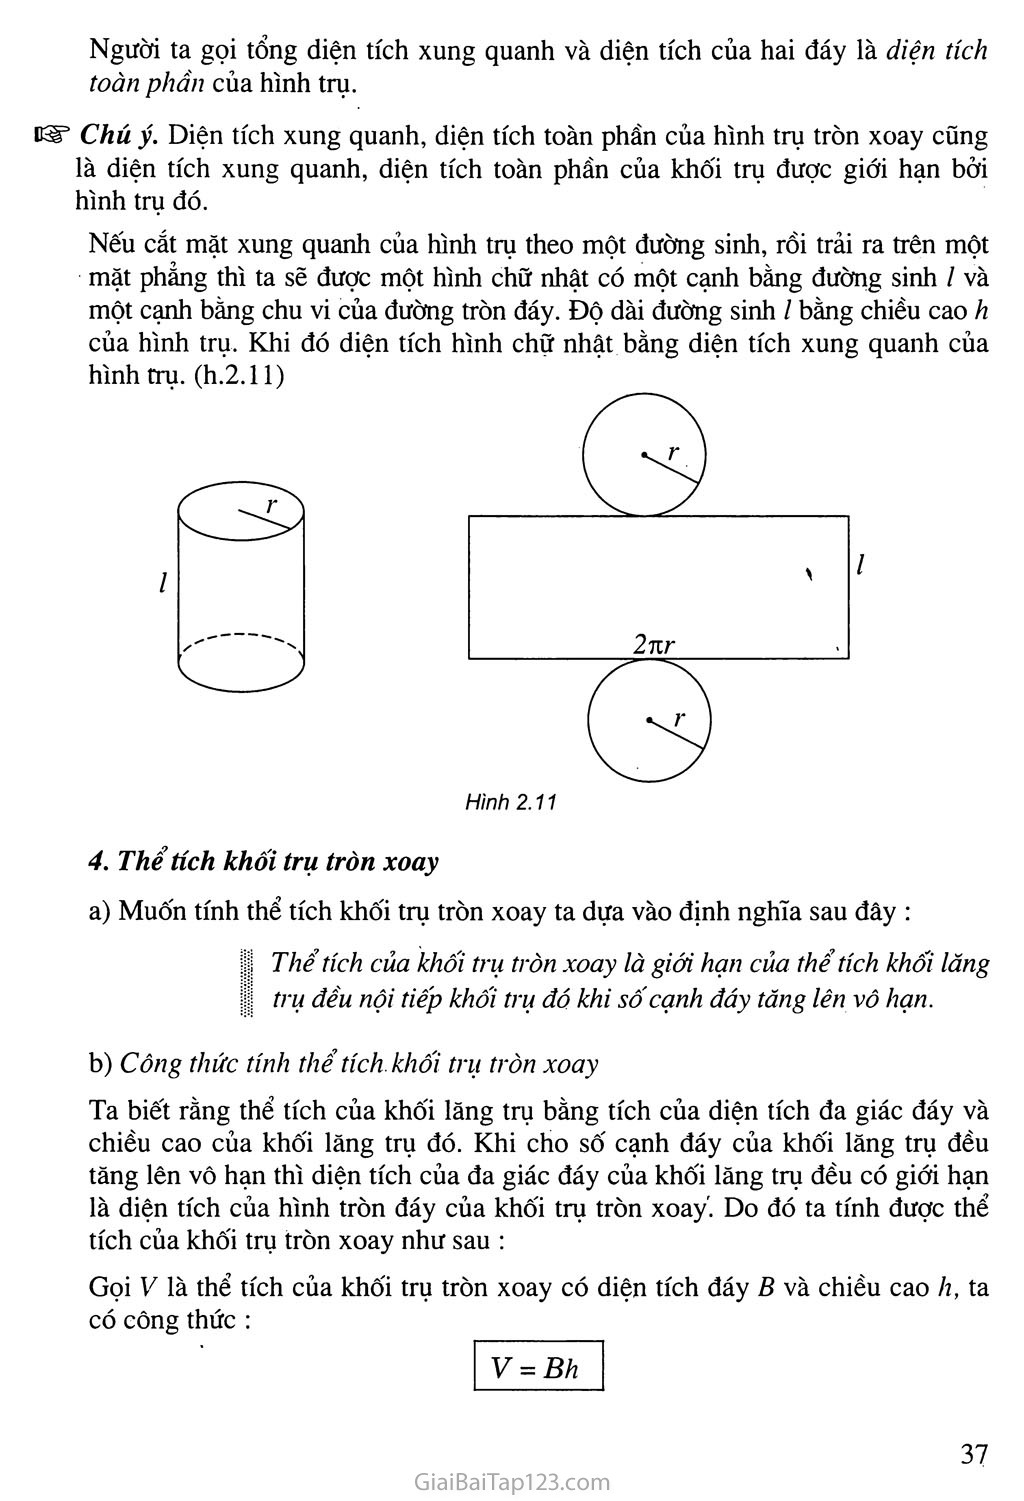 Bài 1. Khái niệm vè mặt tròn xoay trang 9